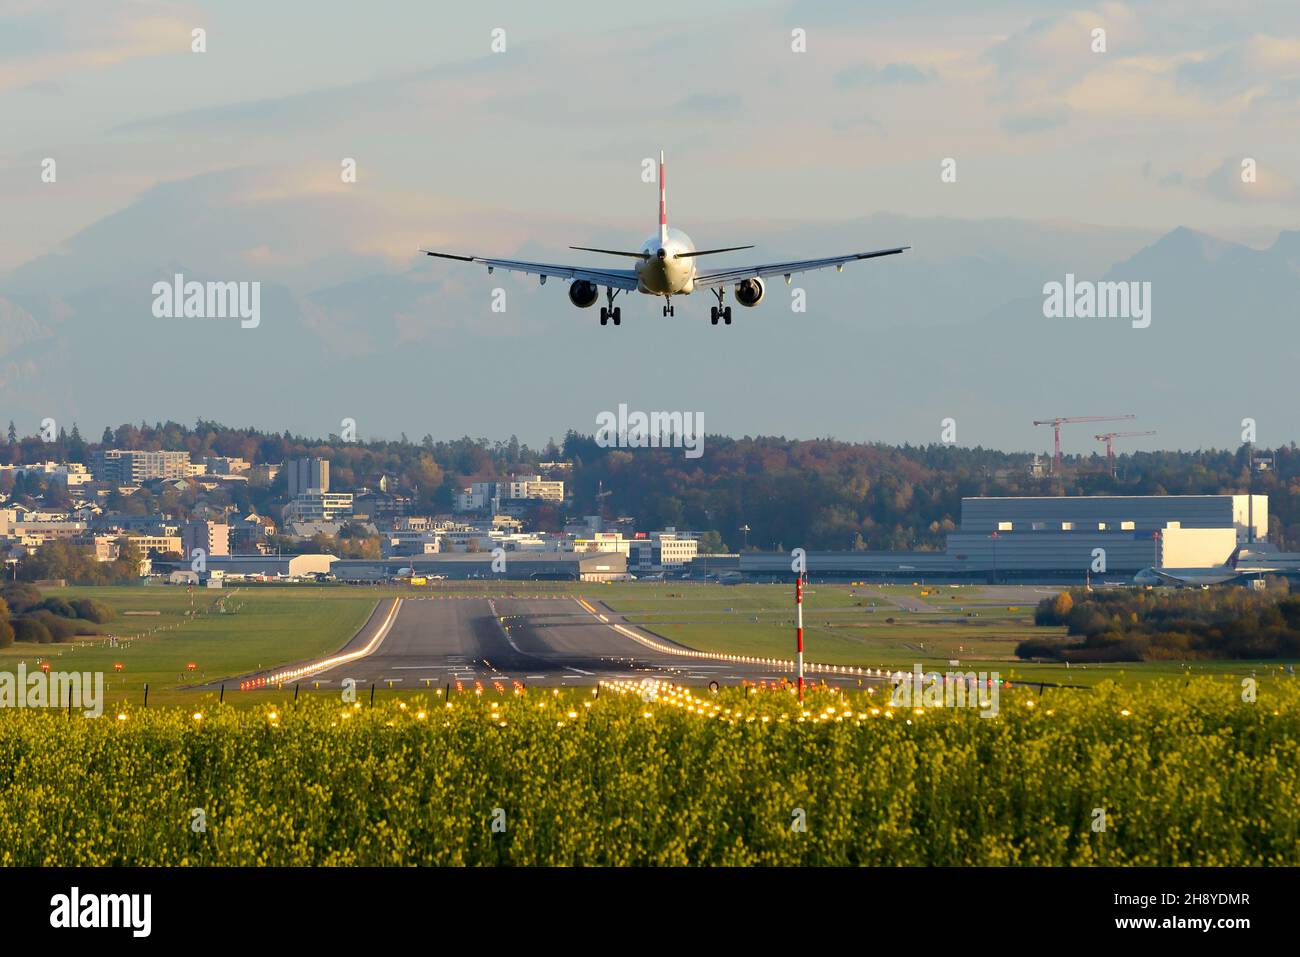 Start- und Landebahn des Flughafens Zürich mit Landung von Swiss Air-Flugzeugen. Der Flughafen befindet sich in Kloten, Zürich und dient als Drehscheibe für Flugreisen. Flugzeug im endgültigen Anflug. Stockfoto